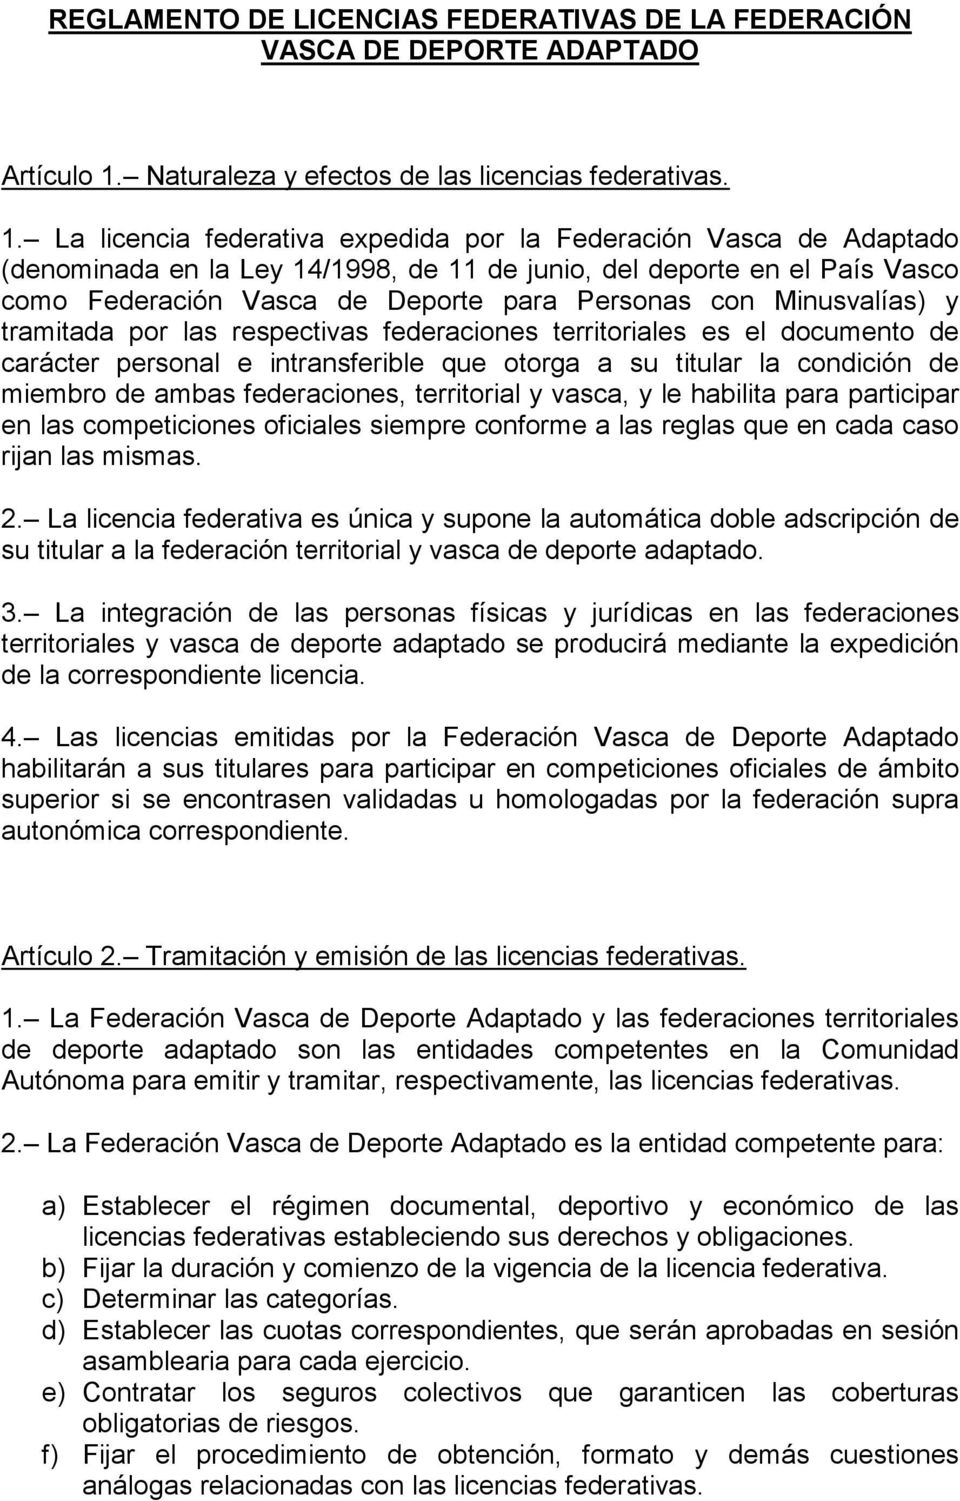 La licencia federativa expedida por la Federación Vasca de Adaptado (denominada en la Ley 14/1998, de 11 de junio, del deporte en el País Vasco como Federación Vasca de Deporte para Personas con